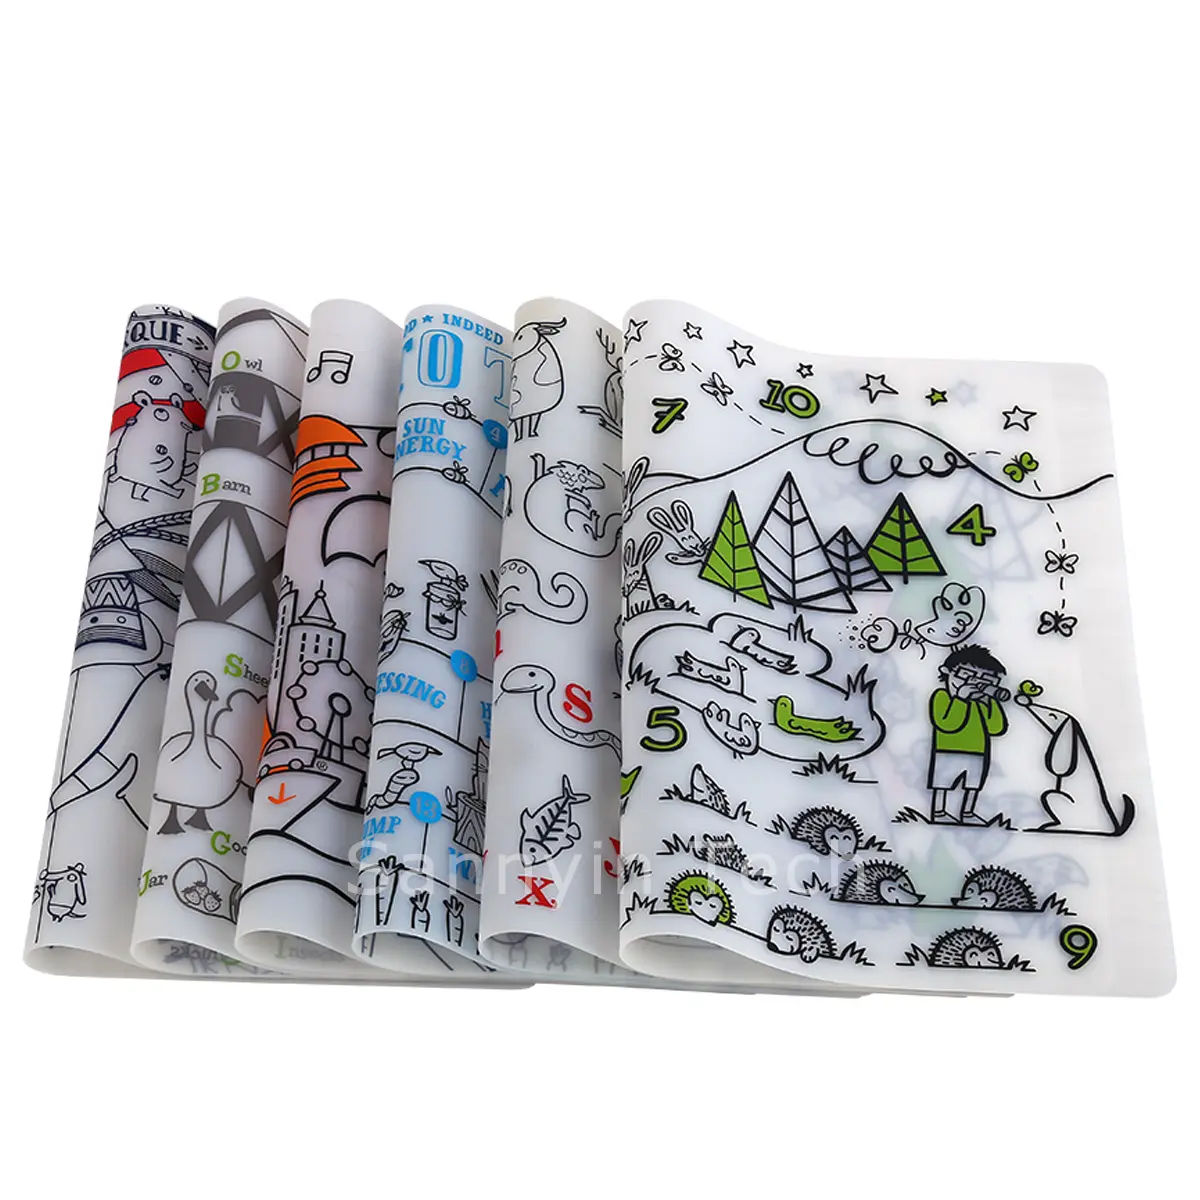 Tappetino per scarabocchi in Silicone tovaglietta per Graffiti per bambini tappetino da disegno per colorare alfabeto animale tovaglietta riutilizzabile lavabile digitale per bambini